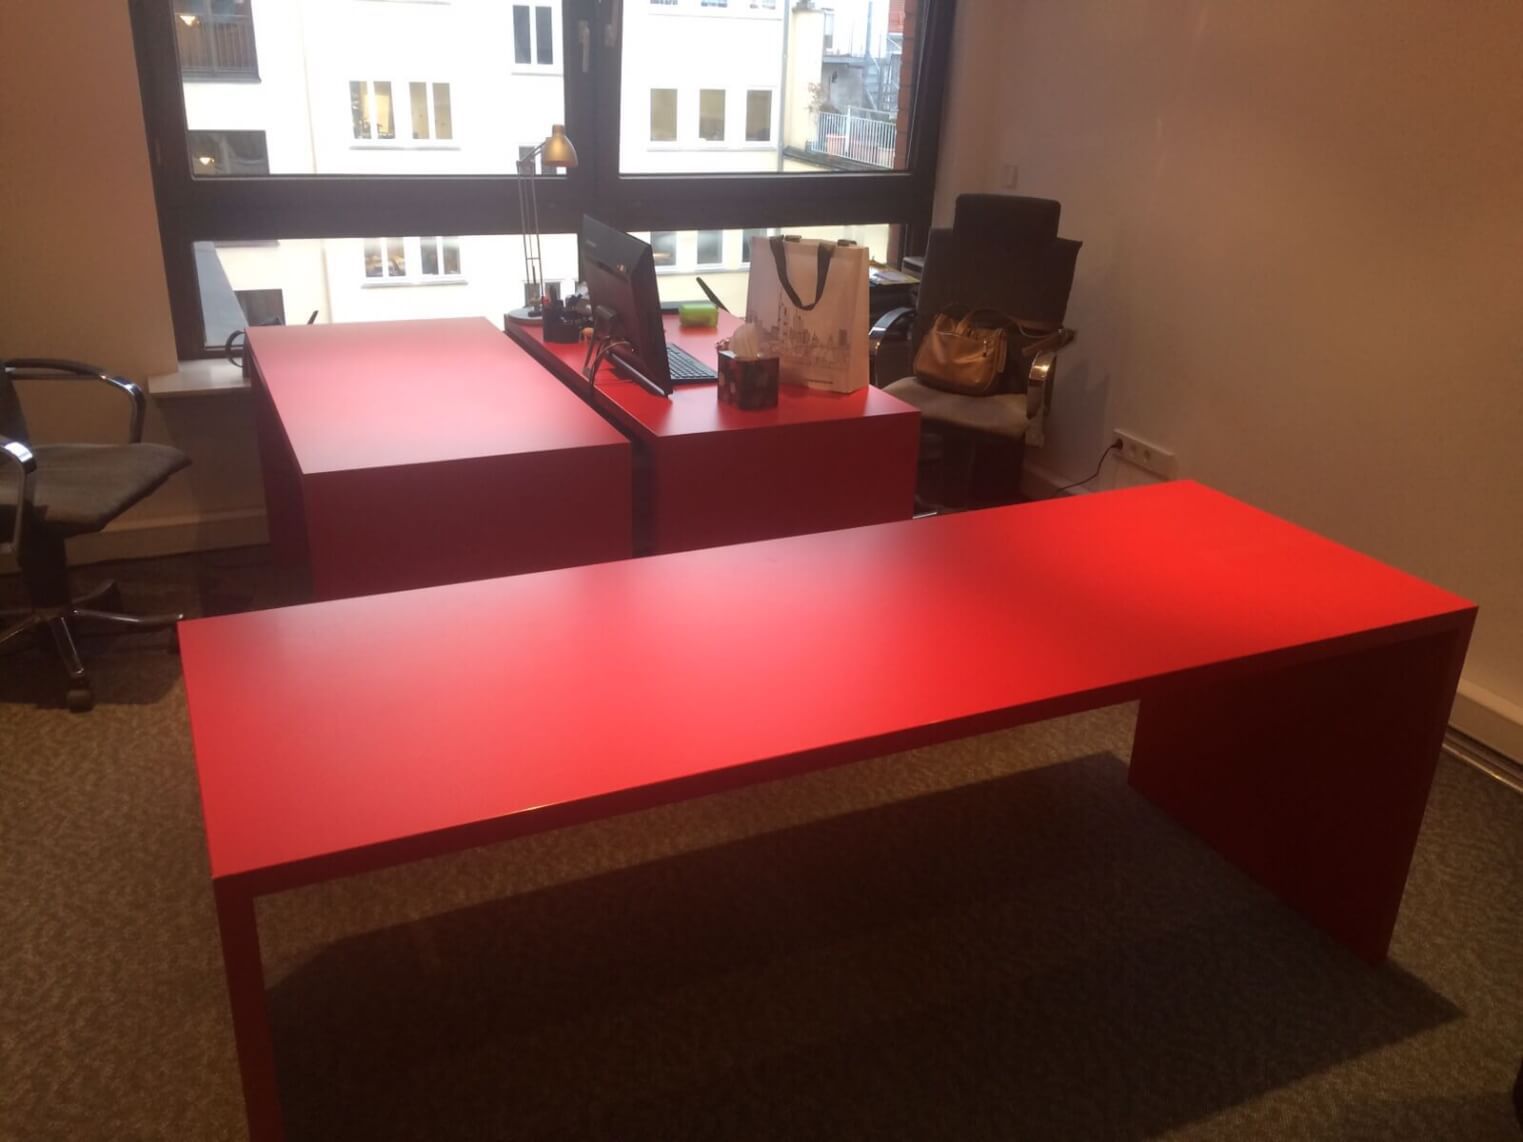 Büro Schreibtisch neu folieren in grau statt rot Beispiel Kosten Bilder vorher